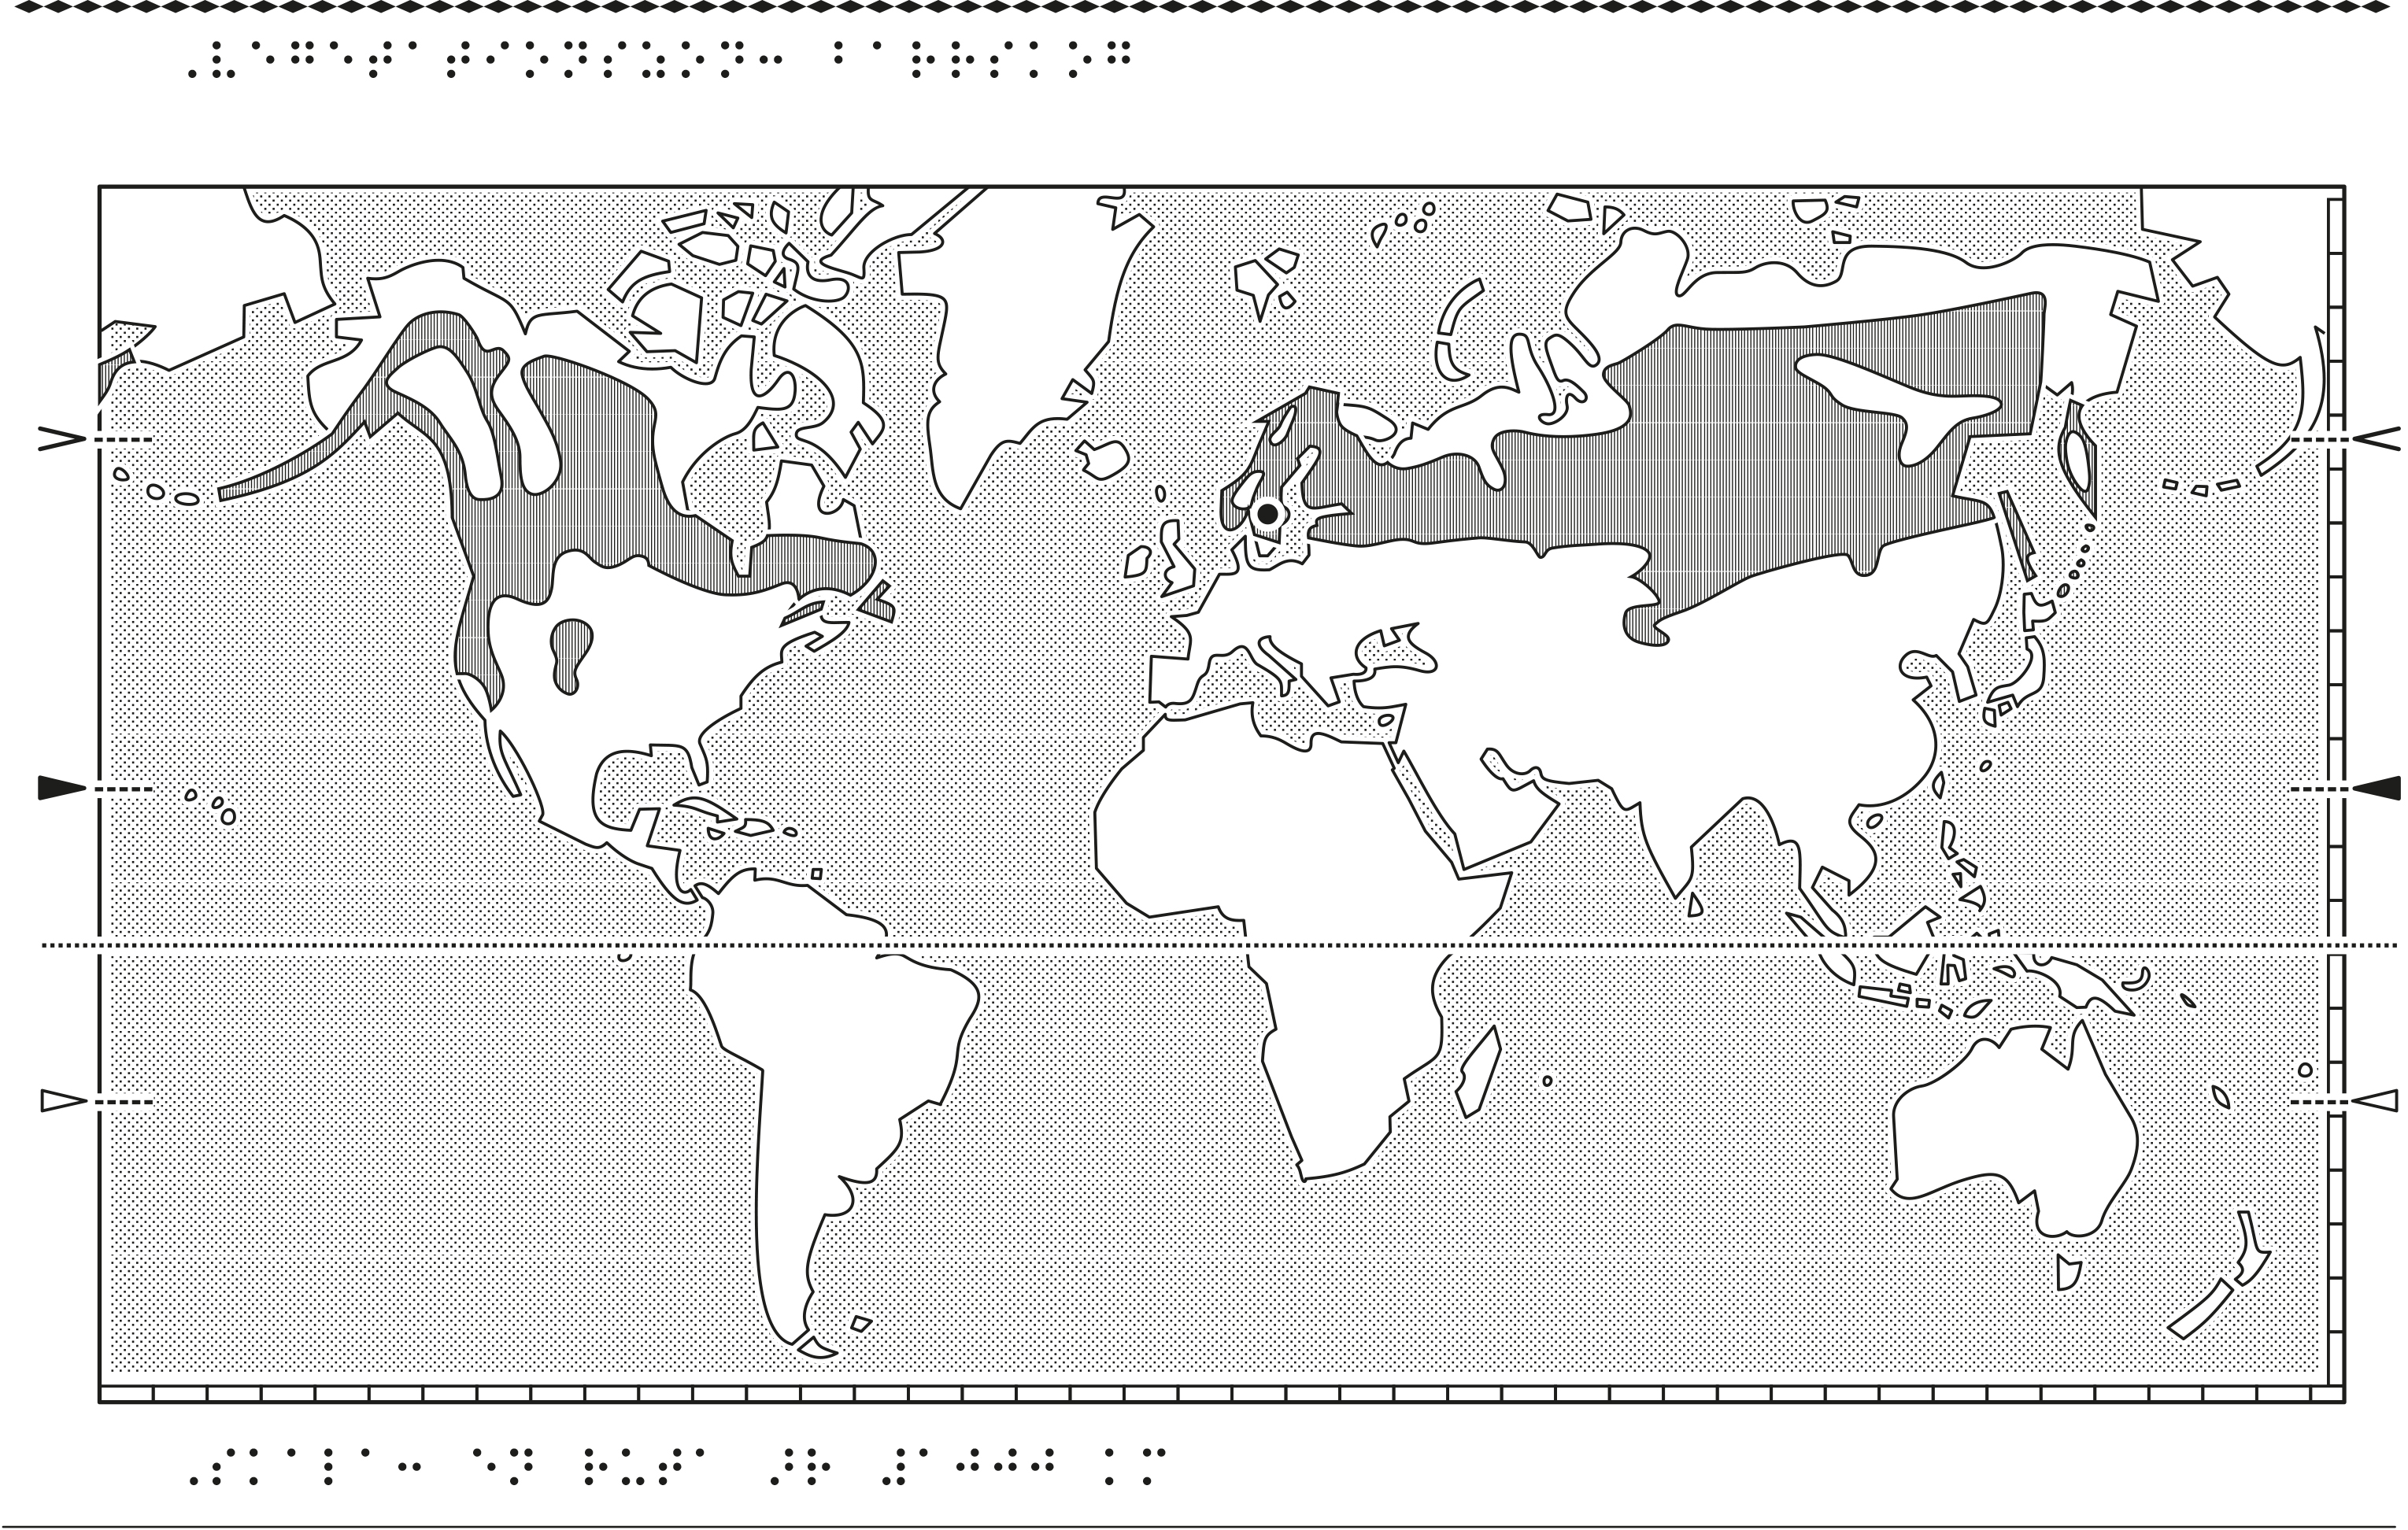 Världskarta i relief med vegetationszoner markerade.